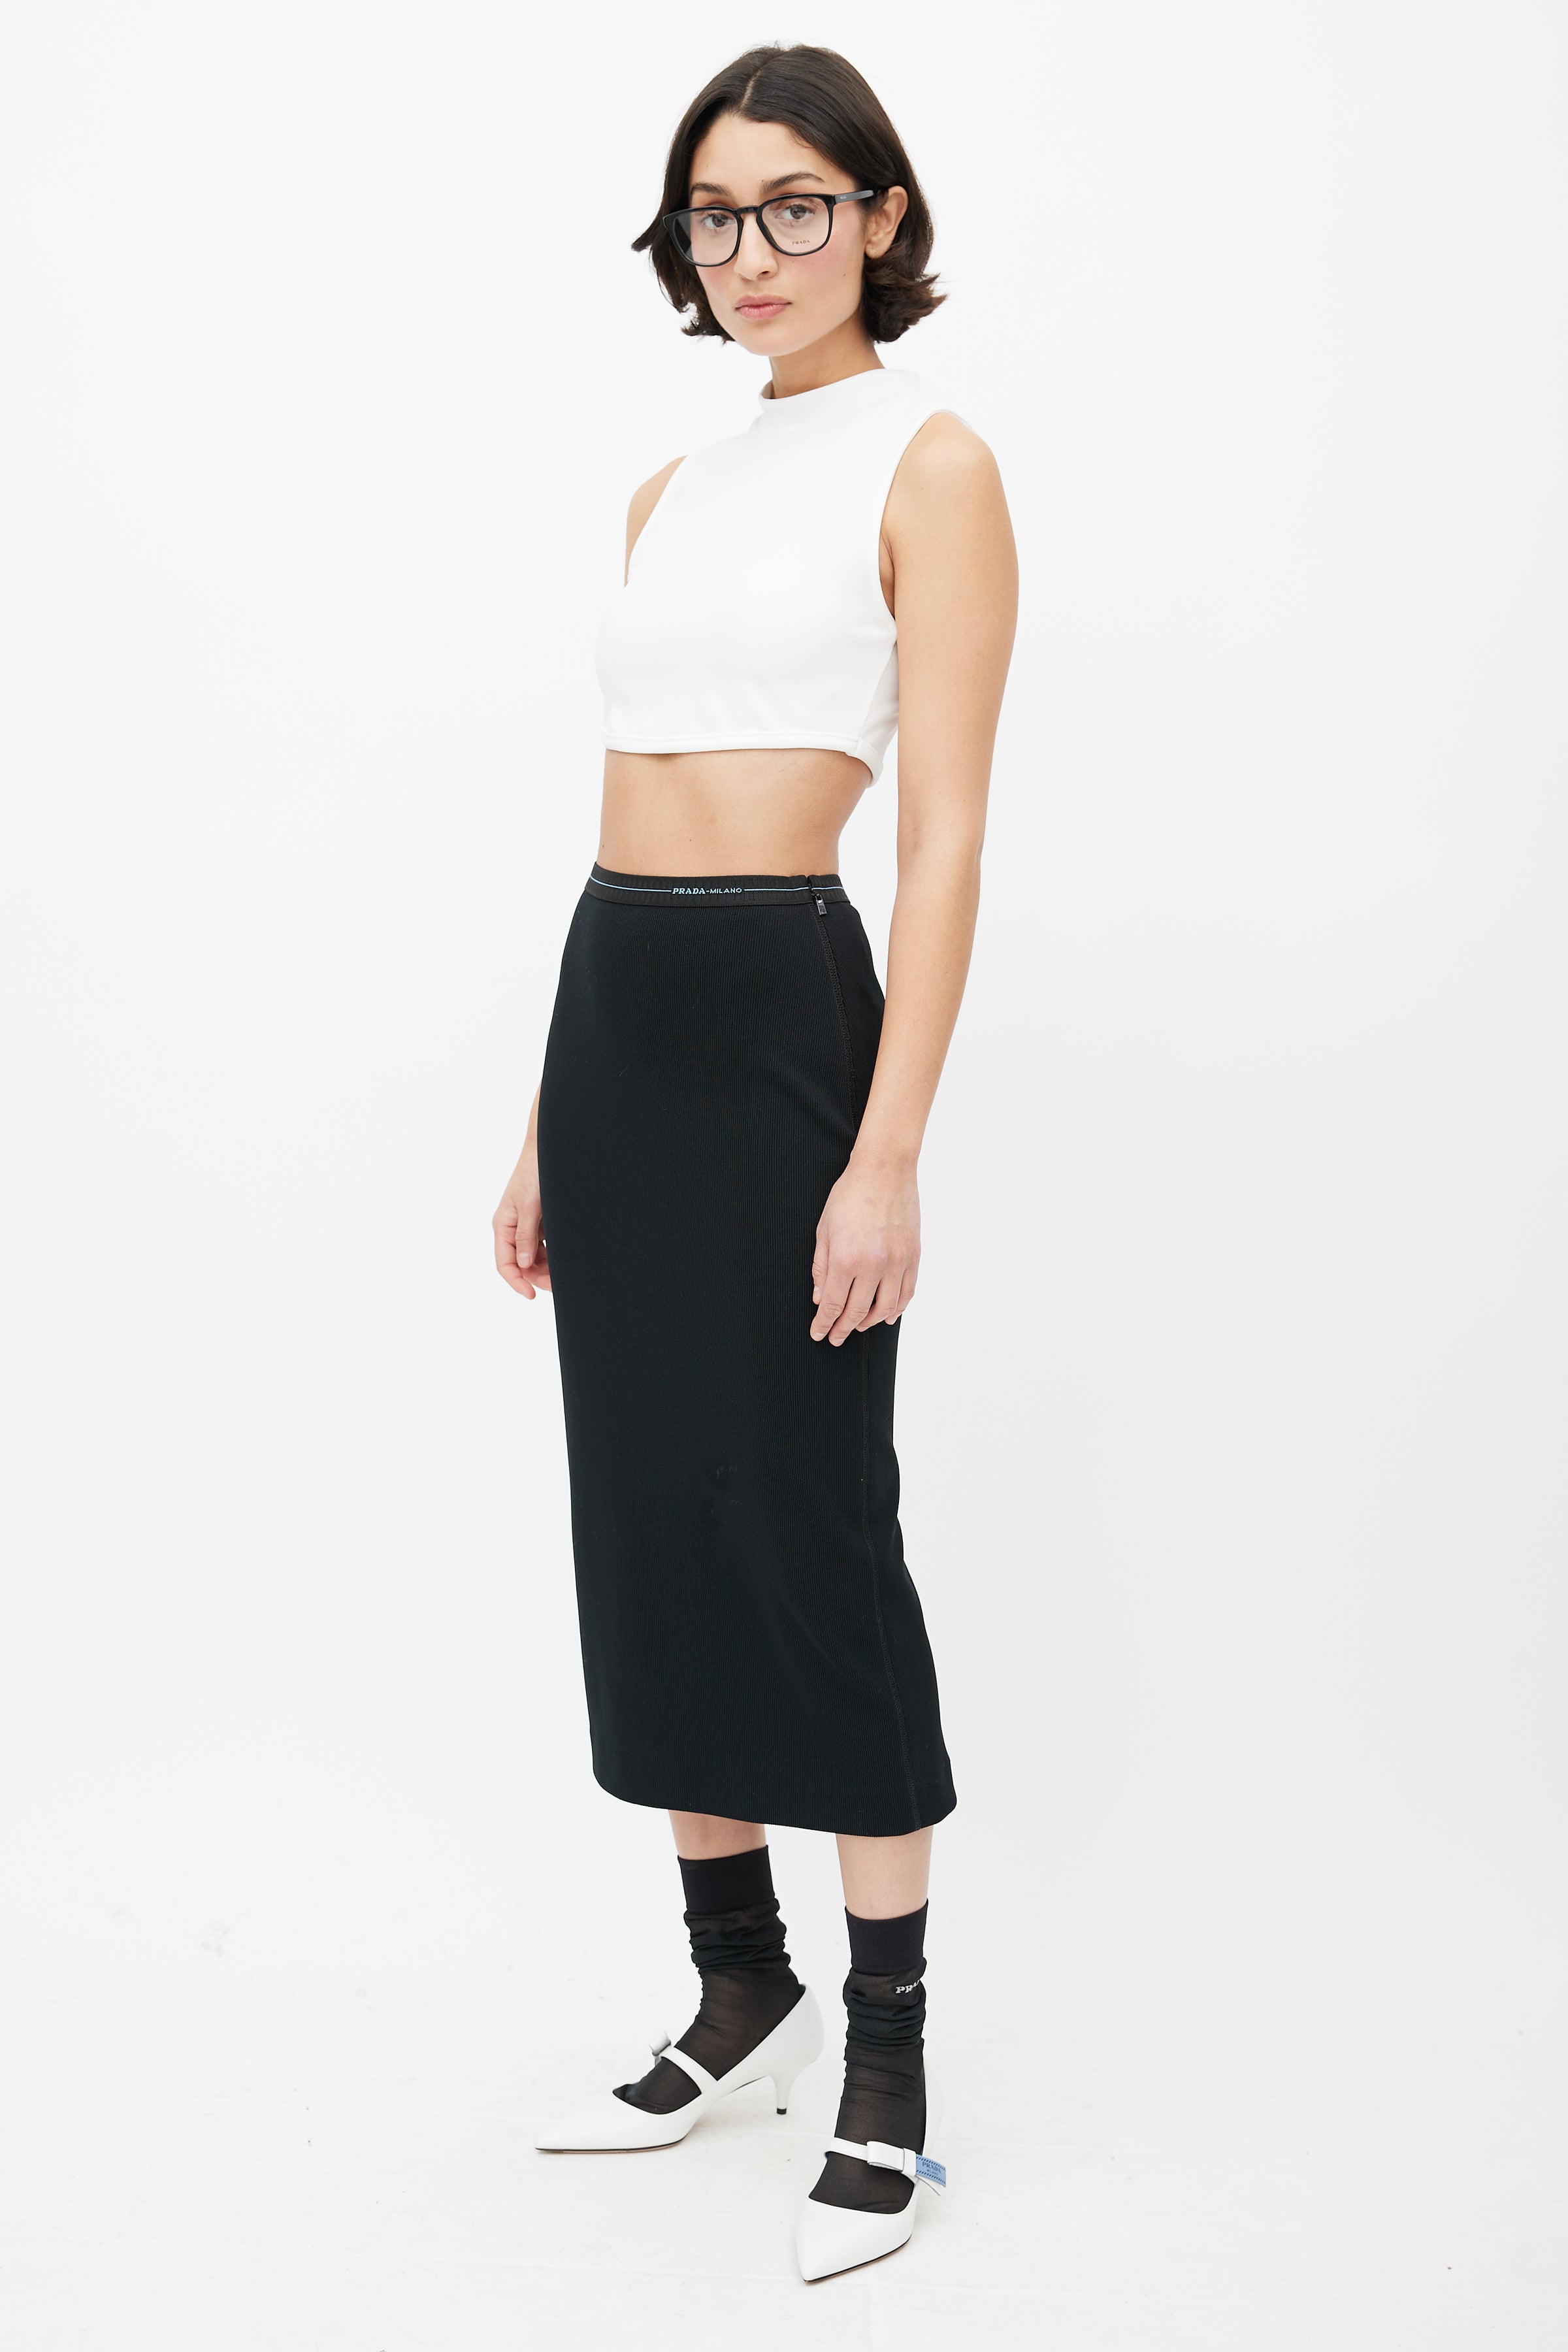 Prada // Black Knit Logo Skirt – VSP Consignment